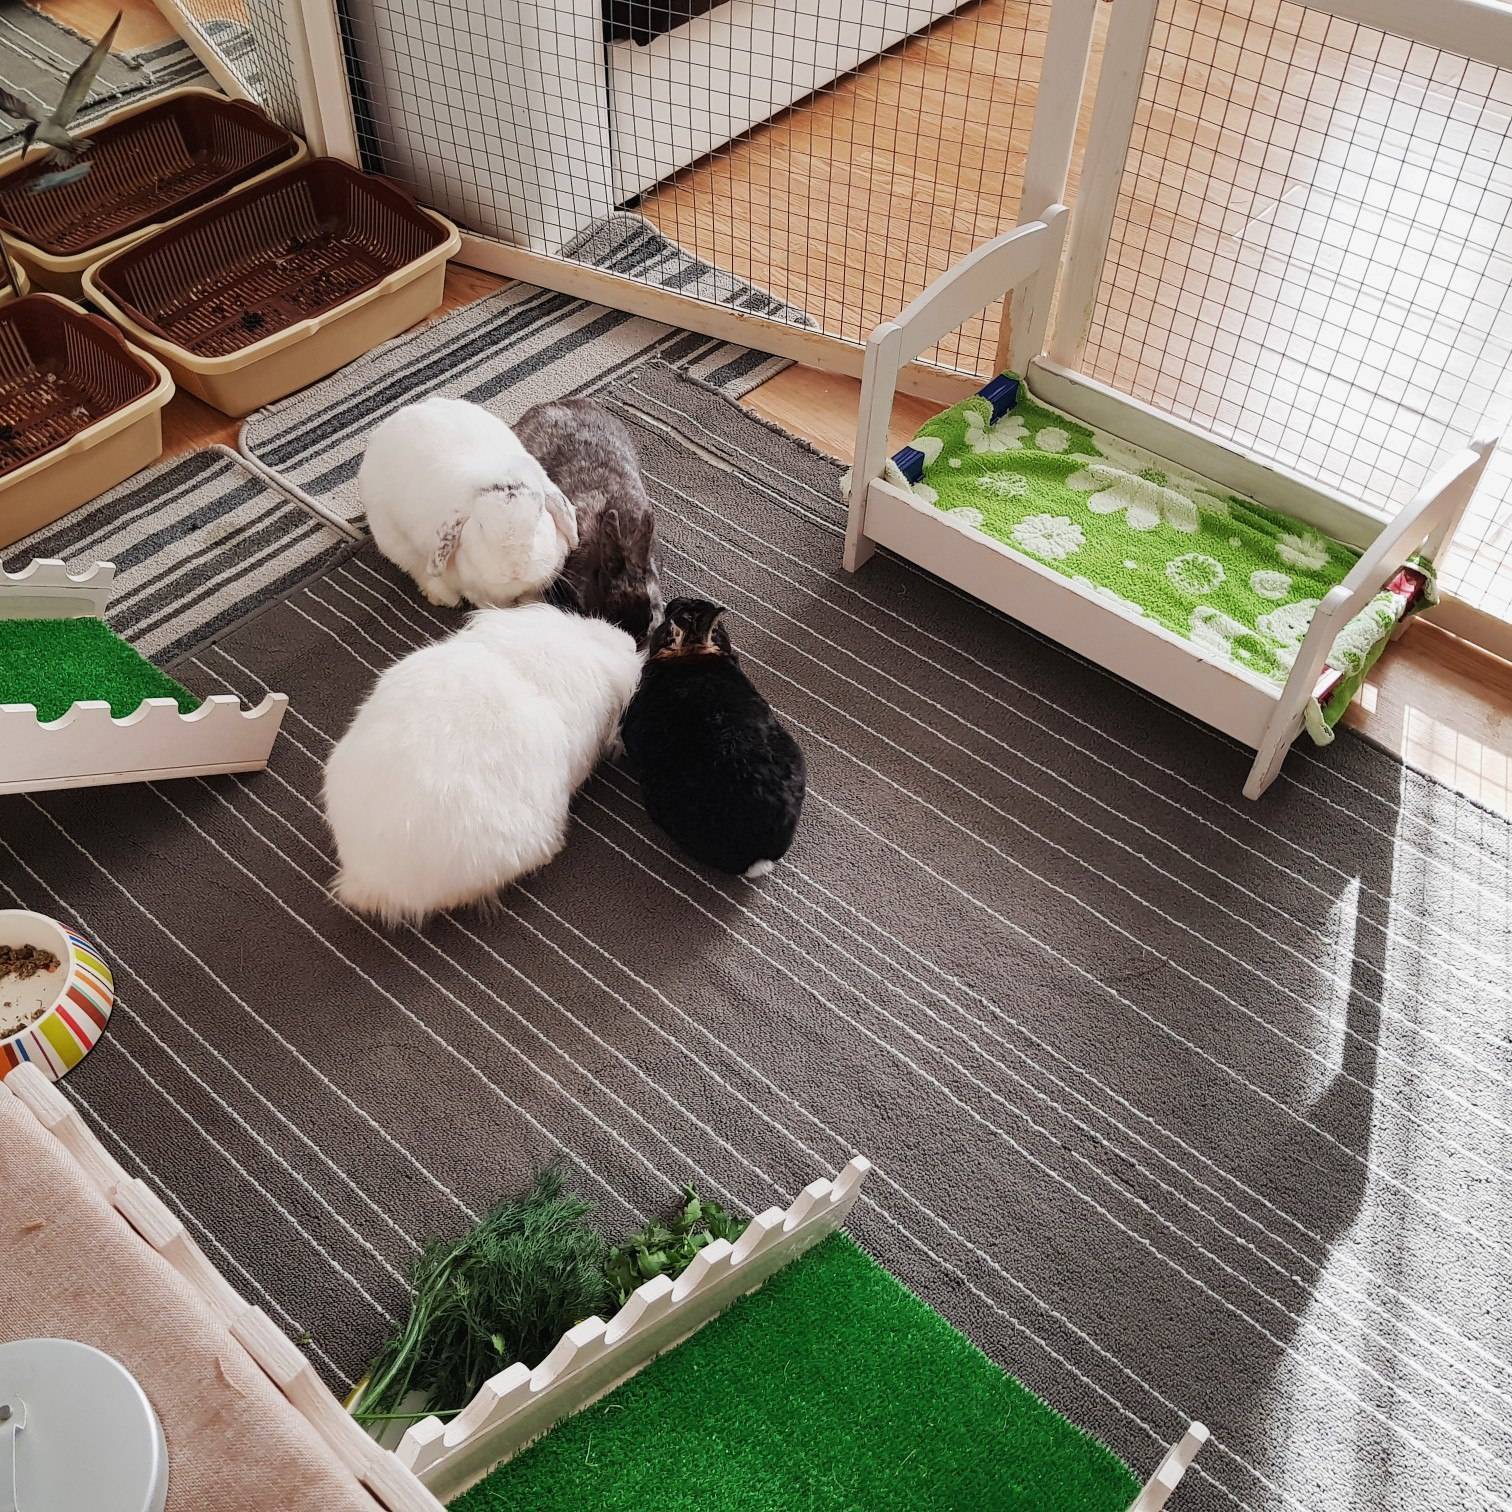 Декоративные кролики: породы зверьков, правила ухода и содержания в домашних условиях